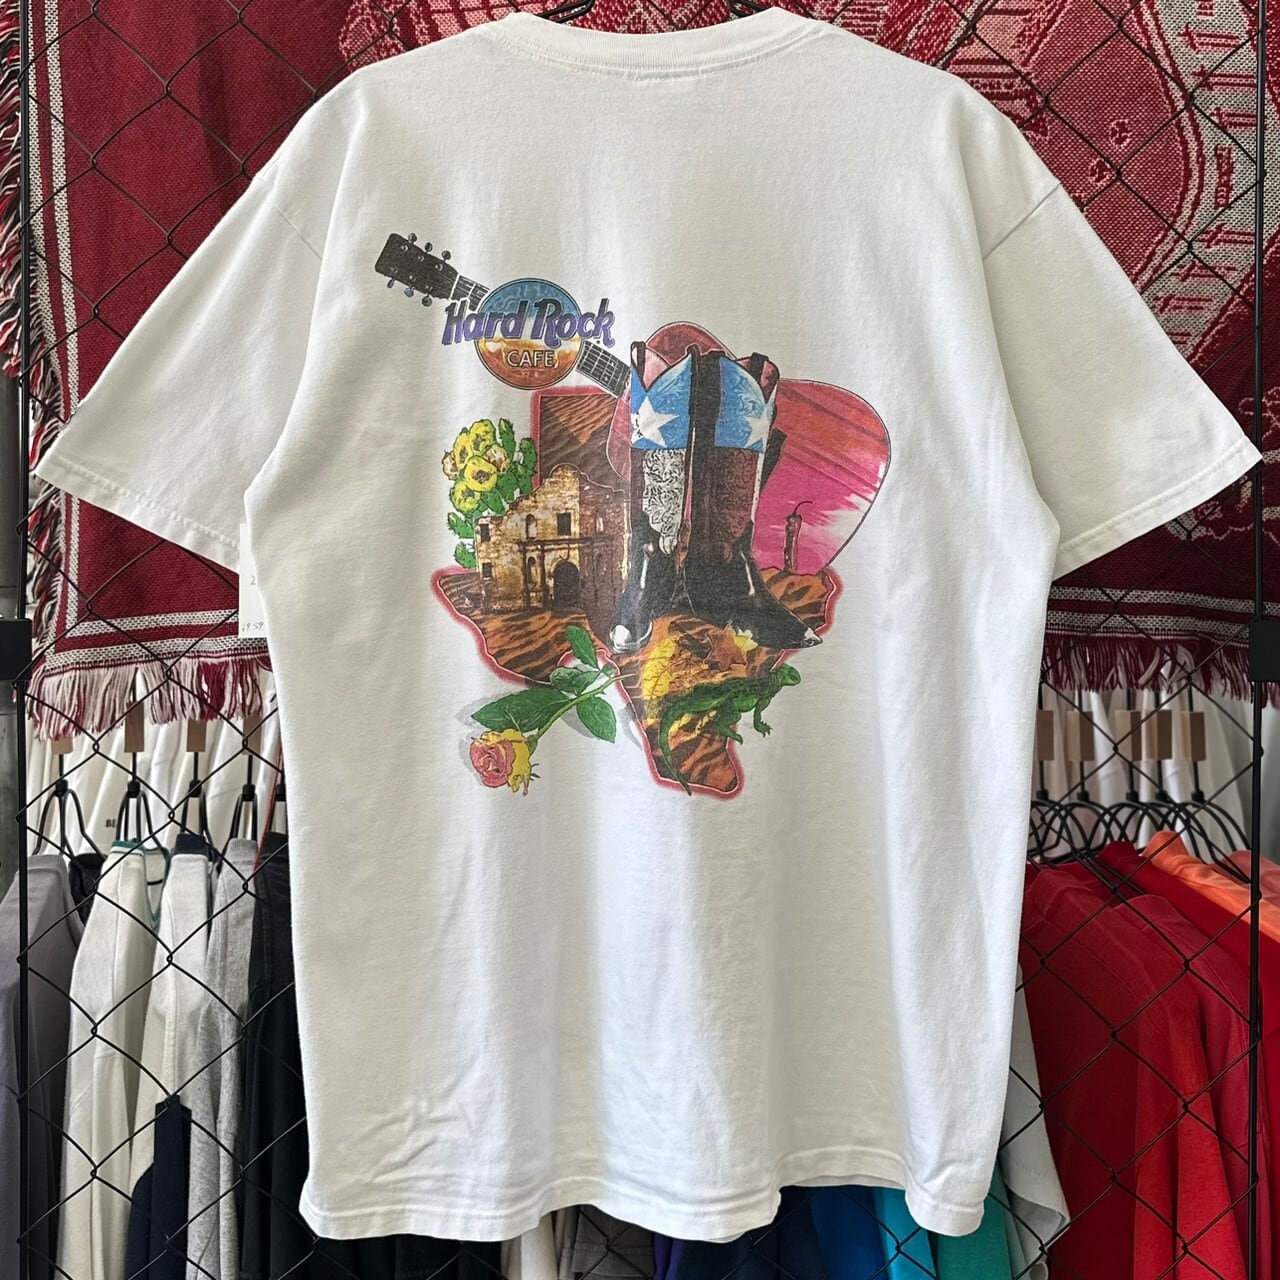 90s USA製 企業 ローザリンダズカフェ プリントデザイン 半袖Tシャツ